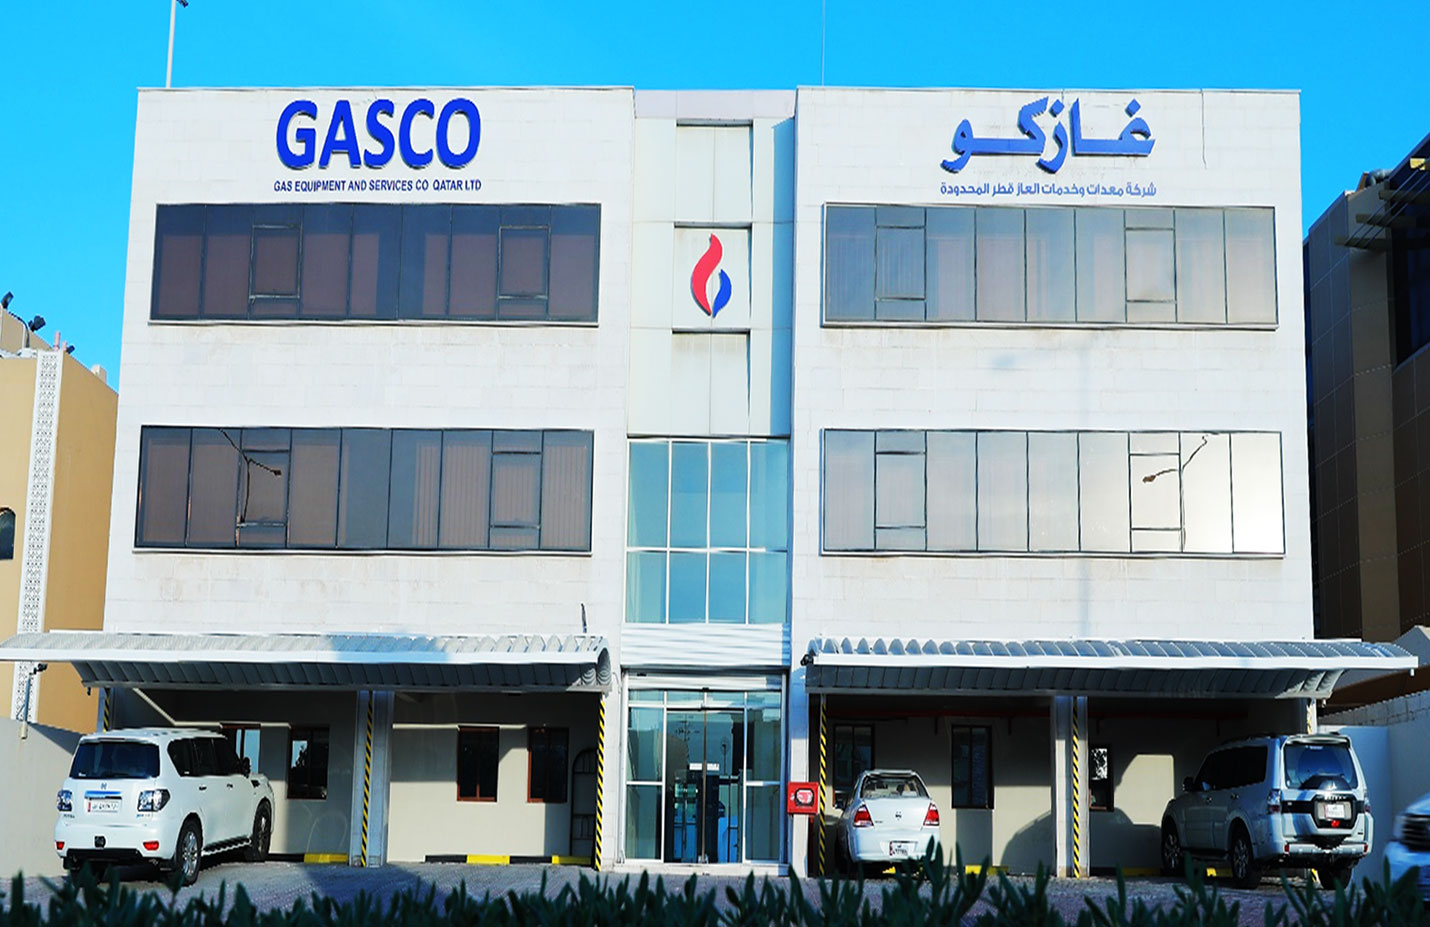 Gas Equipment & Services Co., Ltd. (GASCO)